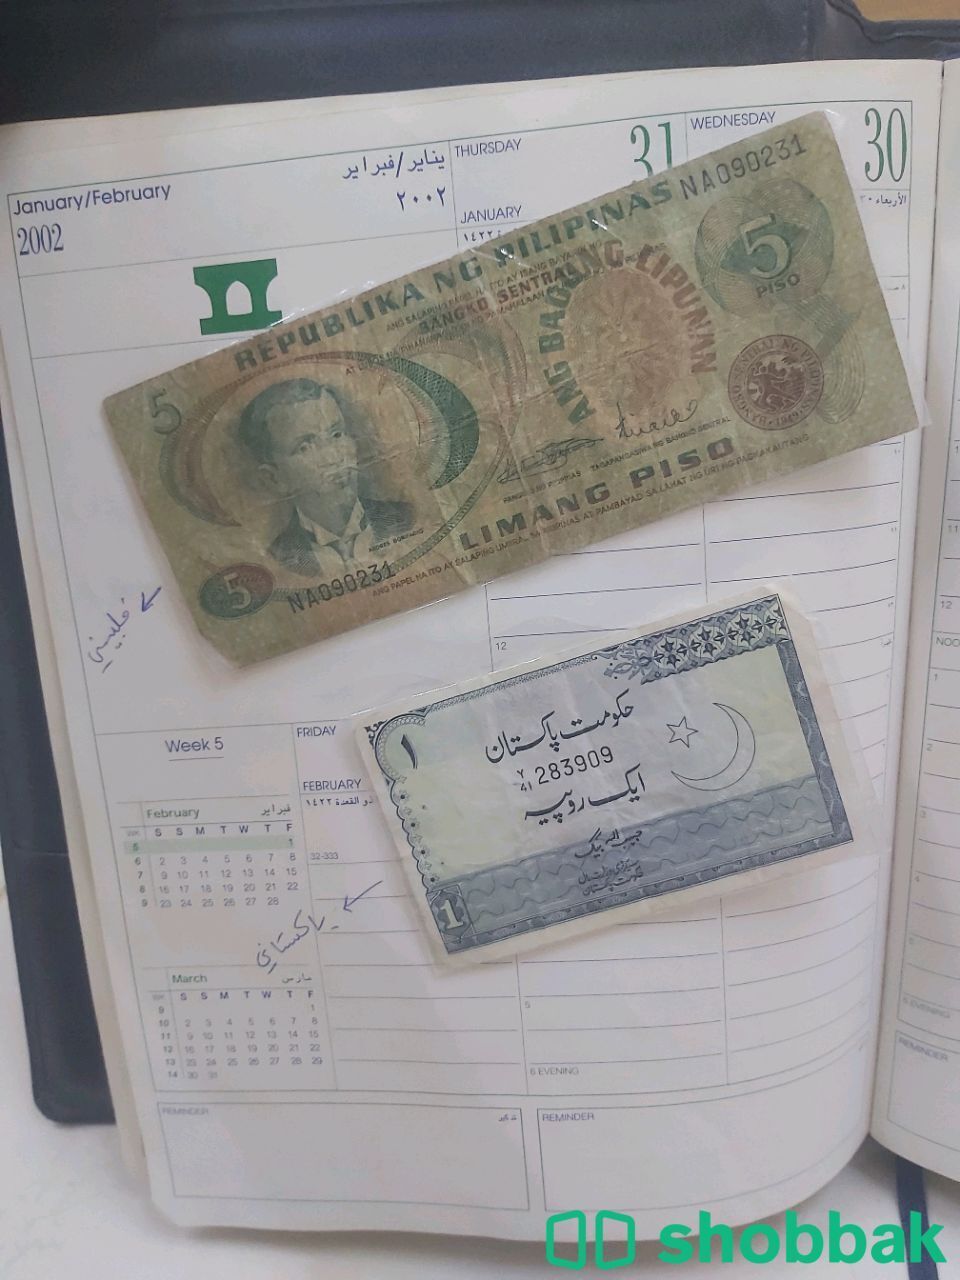 عملات قديمة للبيع اللي يقدر يساعدني و يشتريها مني Shobbak Saudi Arabia